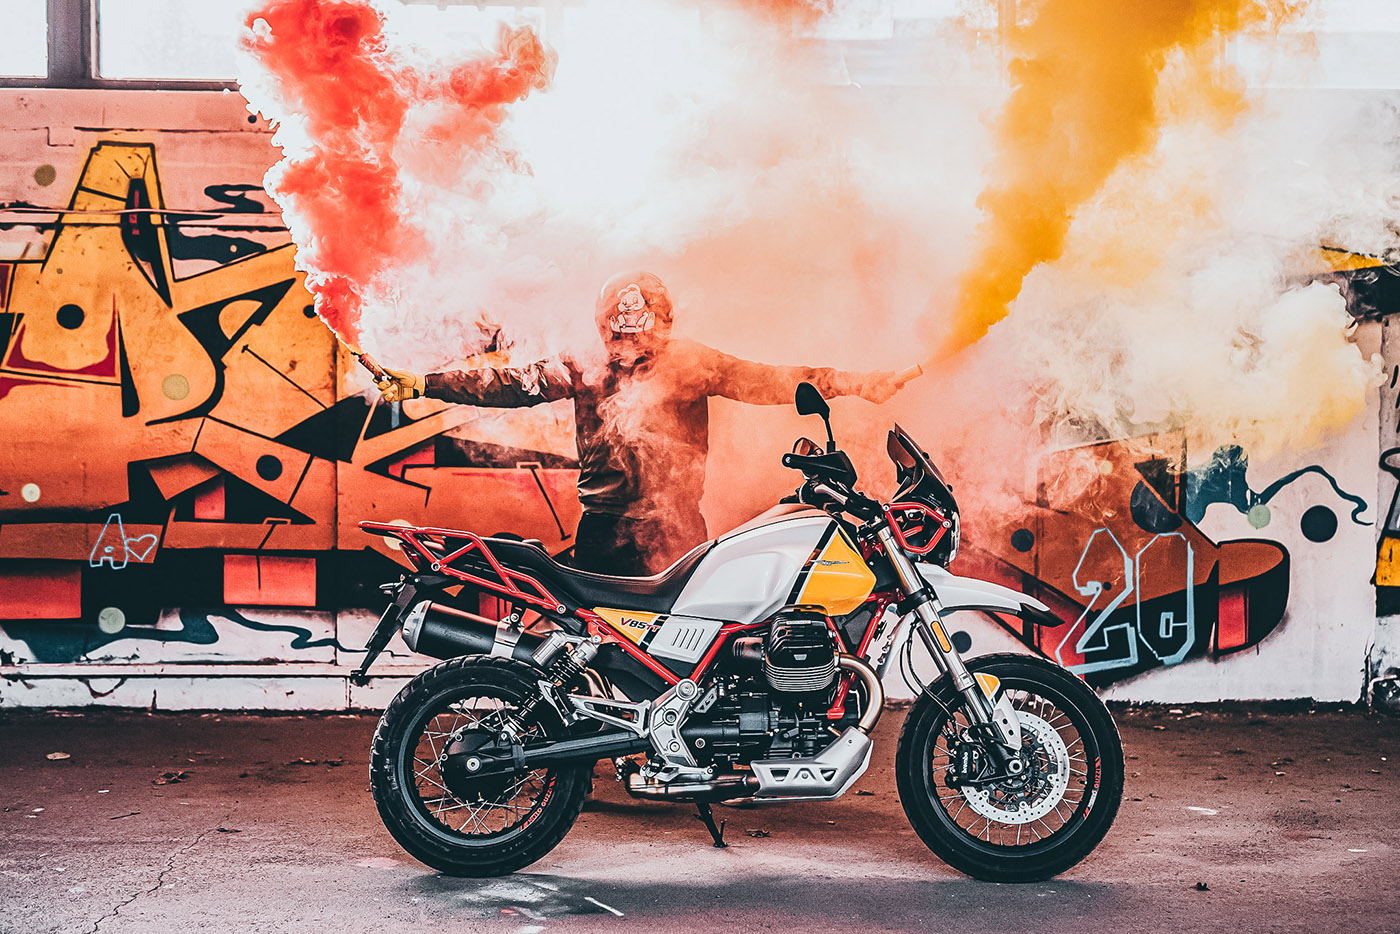 Moto Guzzi V85 TT 2021 delikatny lifting włoskiego hitu